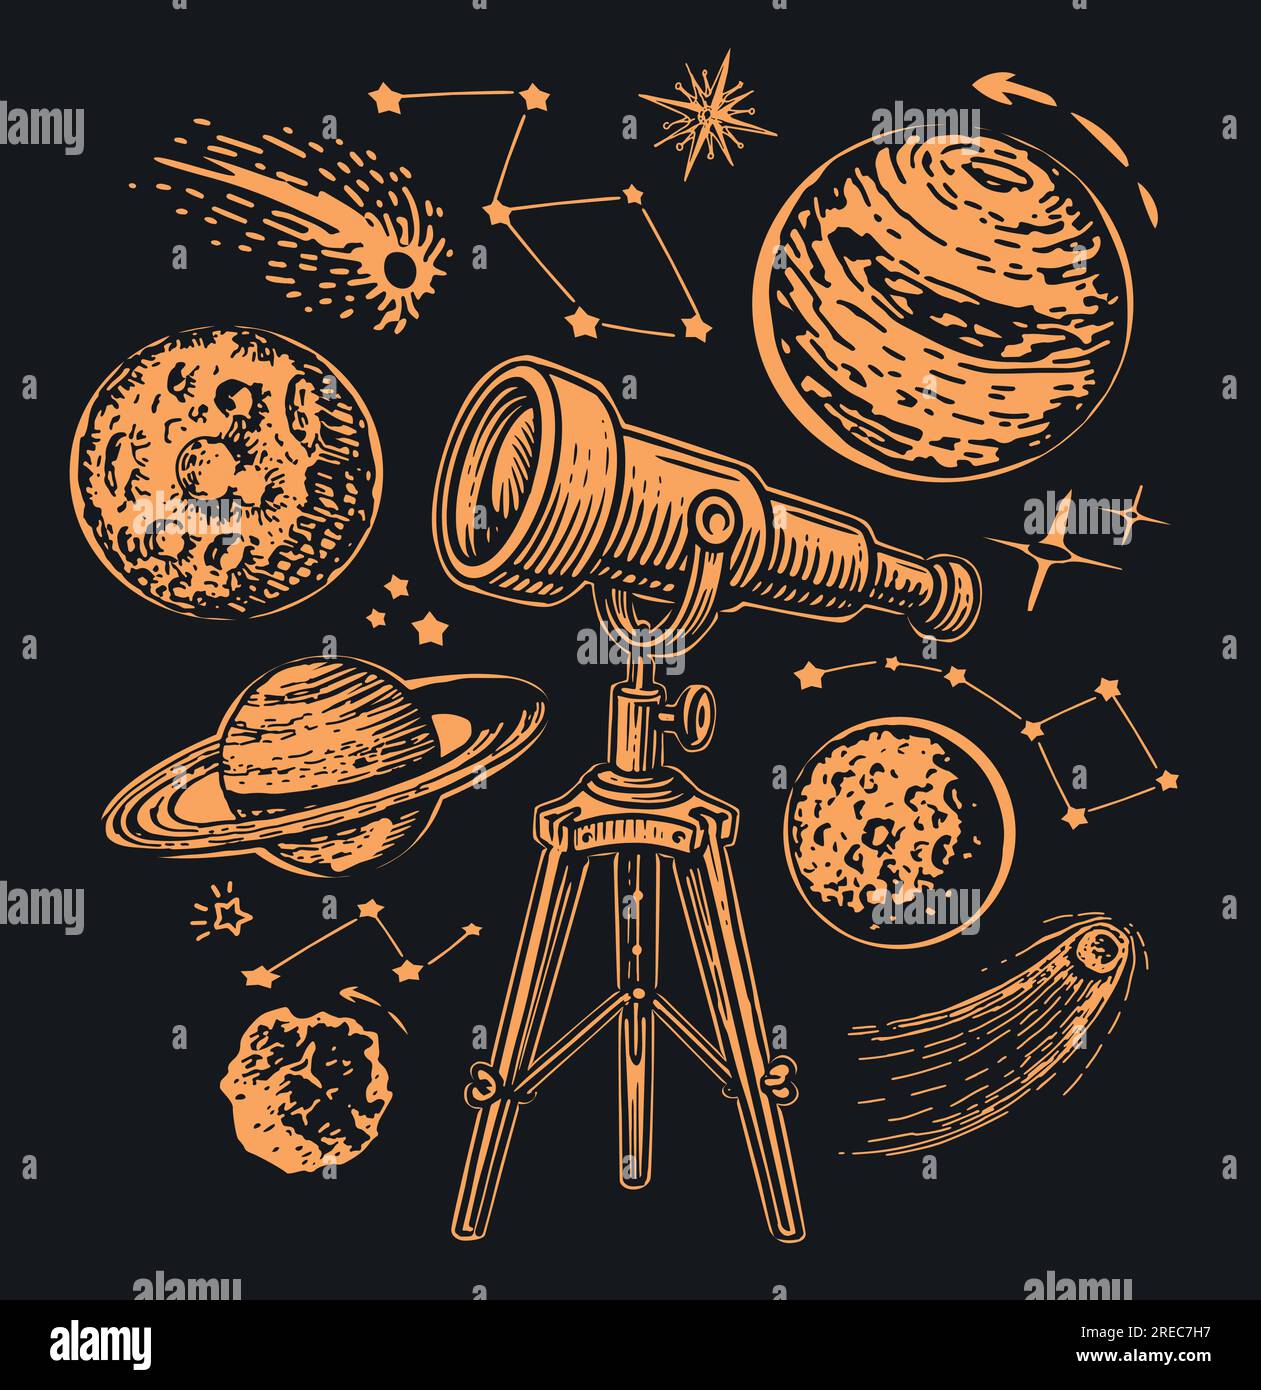 Teleskop zur Beobachtung von Planeten und Sternen. Galaxie, Weltraumkonzept. Vektordarstellung Stock Vektor